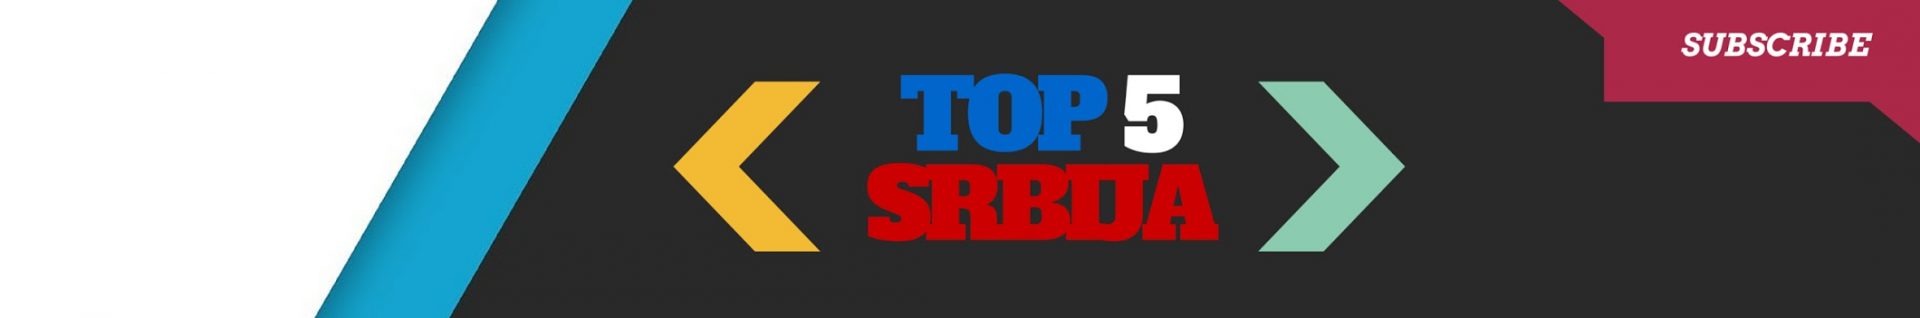 Top 5 Srbija